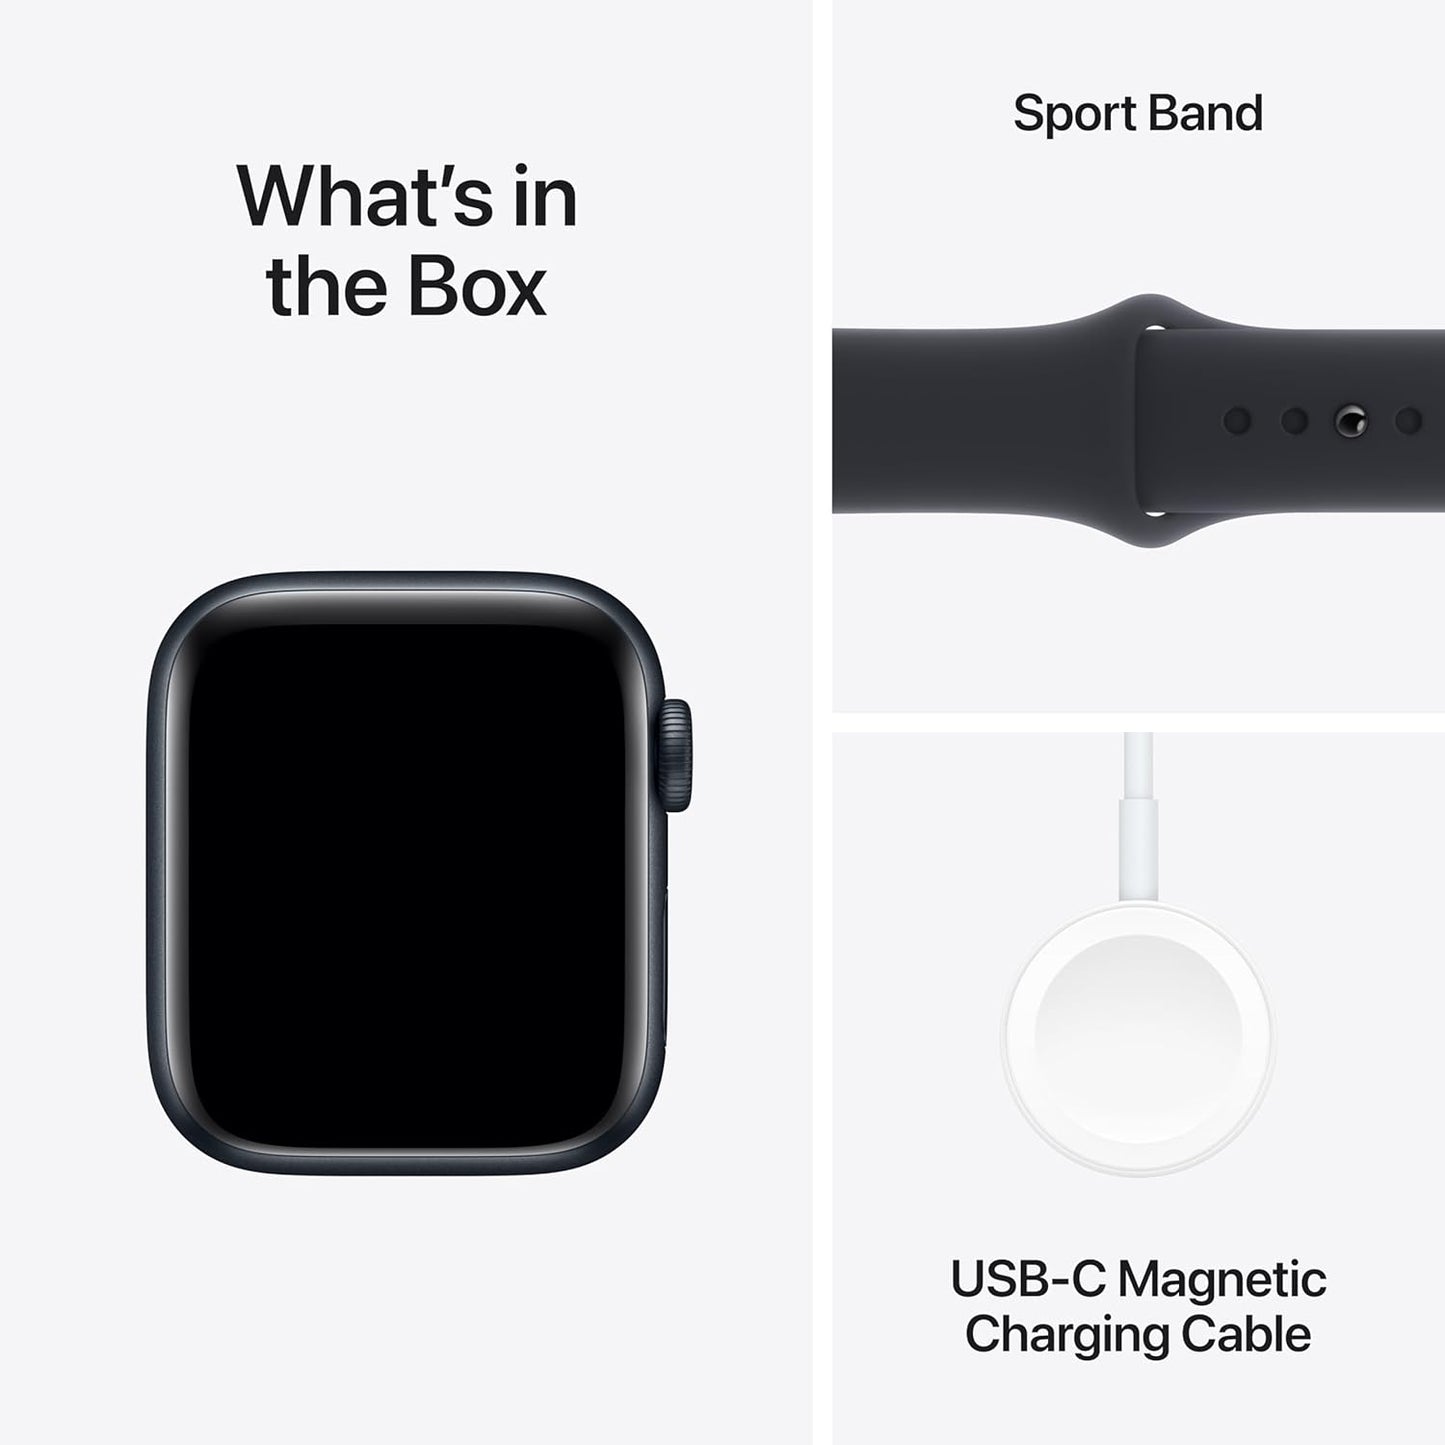 Apple Watch SE (الجيل الثاني) [GPS + Cellular 40mm] ساعة ذكية مع هيكل من الألومنيوم منتصف الليل مع حزام رياضي Midnight S/M. جهاز تتبع اللياقة البدنية والنوم، واكتشاف الأعطال، ومراقبة معدل ضربات القلب 